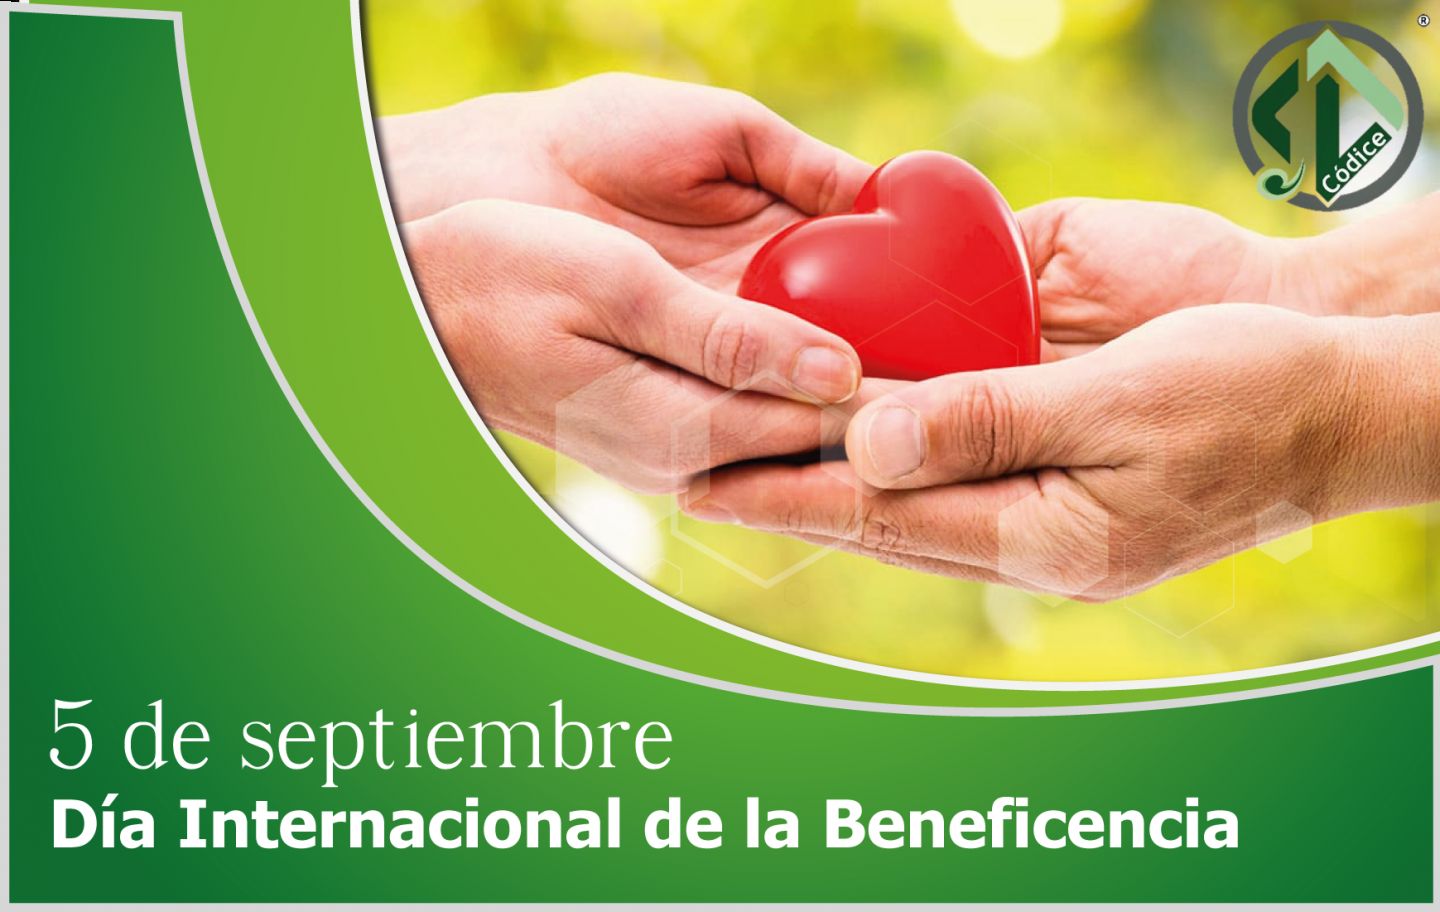 Día Internacional de la Beneficencia
